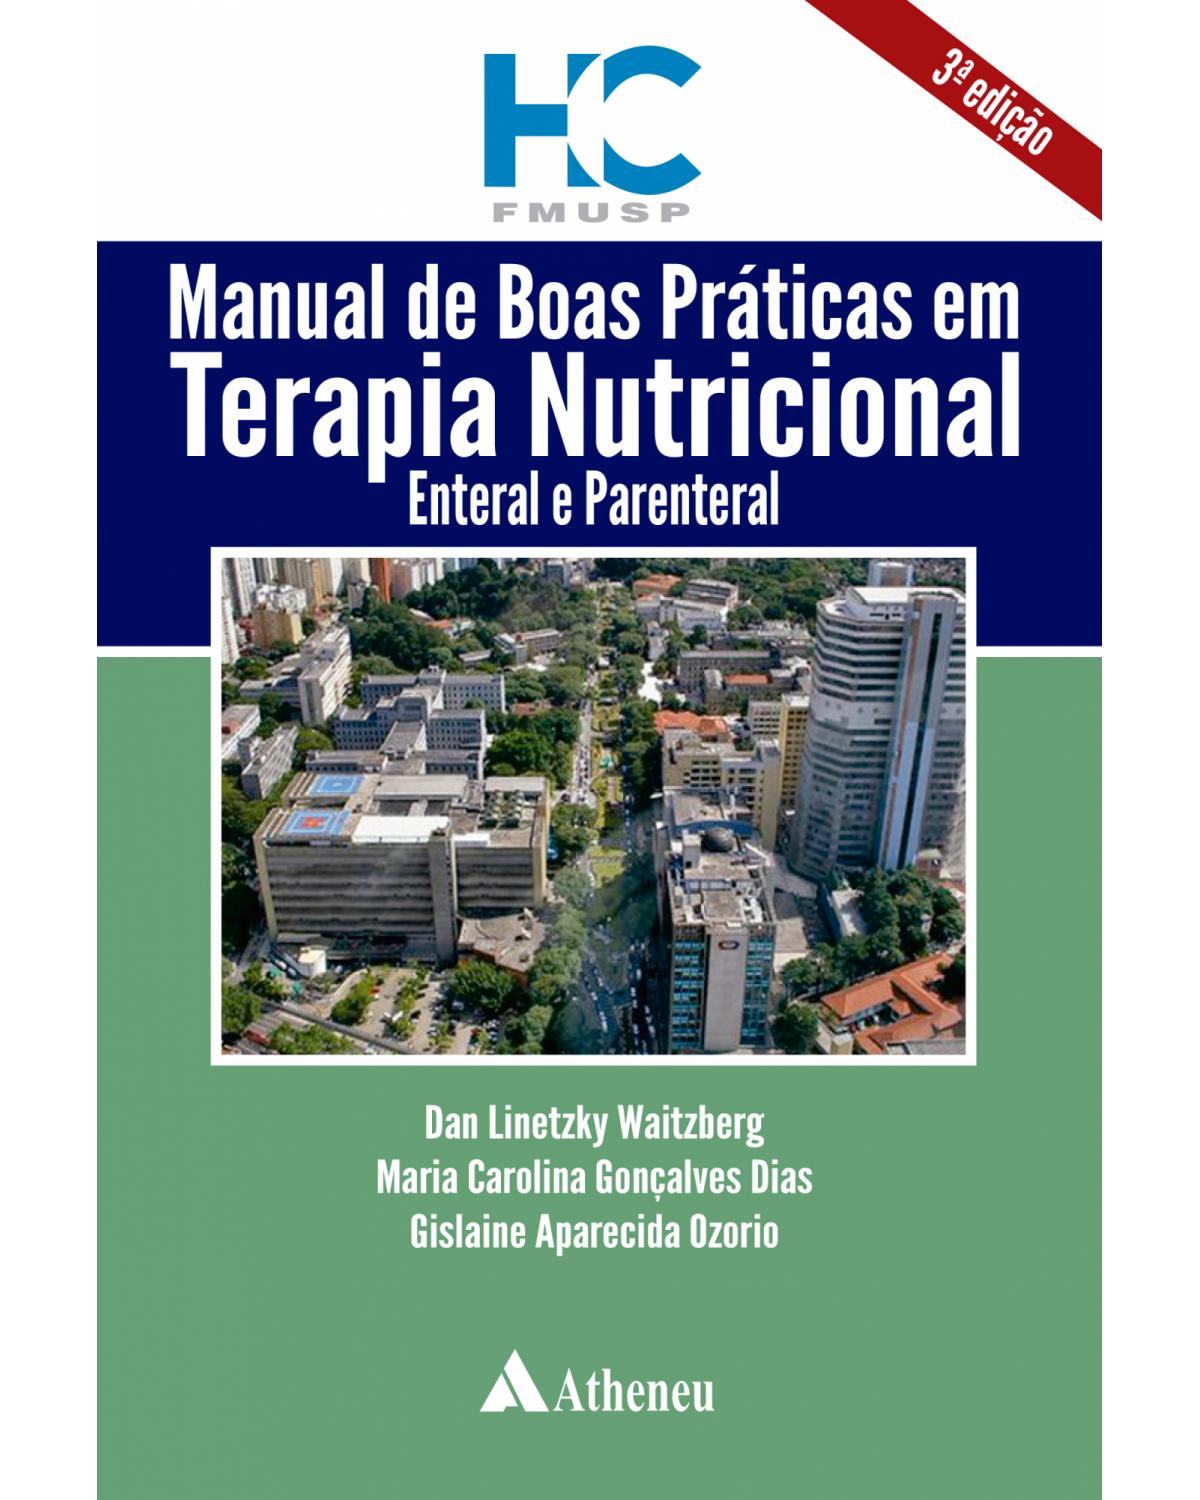 Manual de boas práticas em terapia nutricional, enteral e parenteral - 3ª Edição | 2021